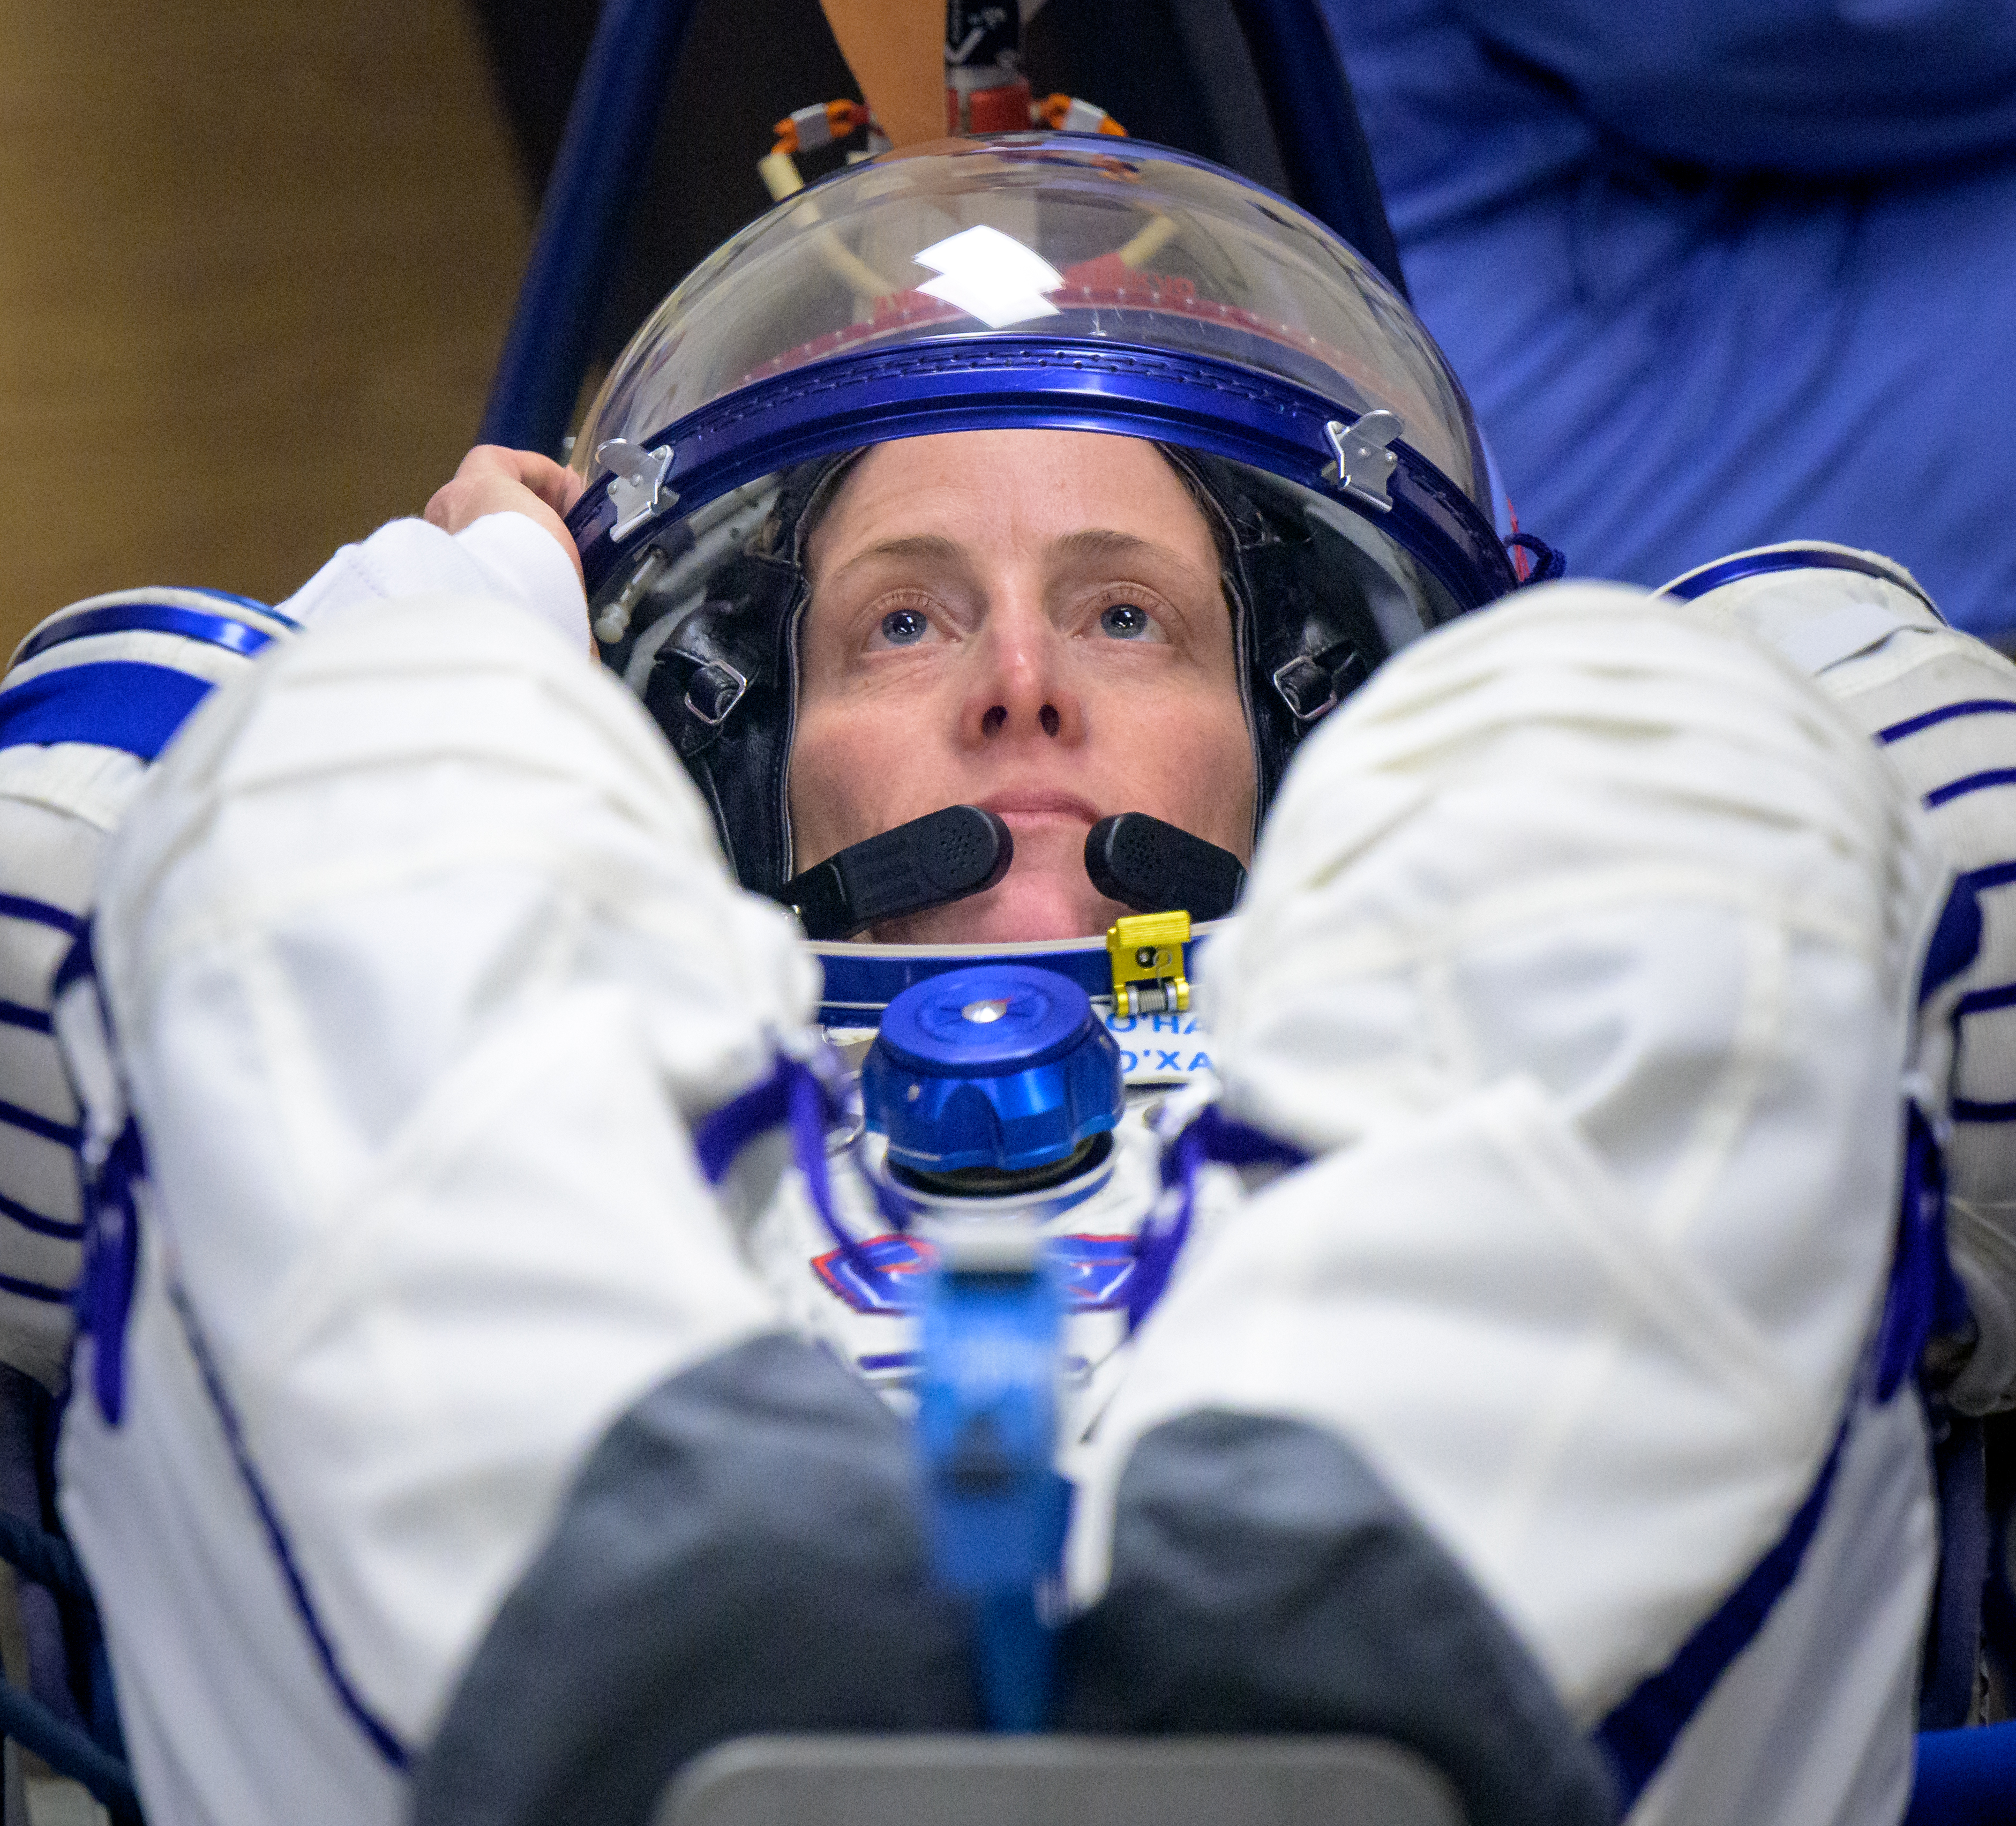 Preflight Checks for Astronaut Loral O’Hara